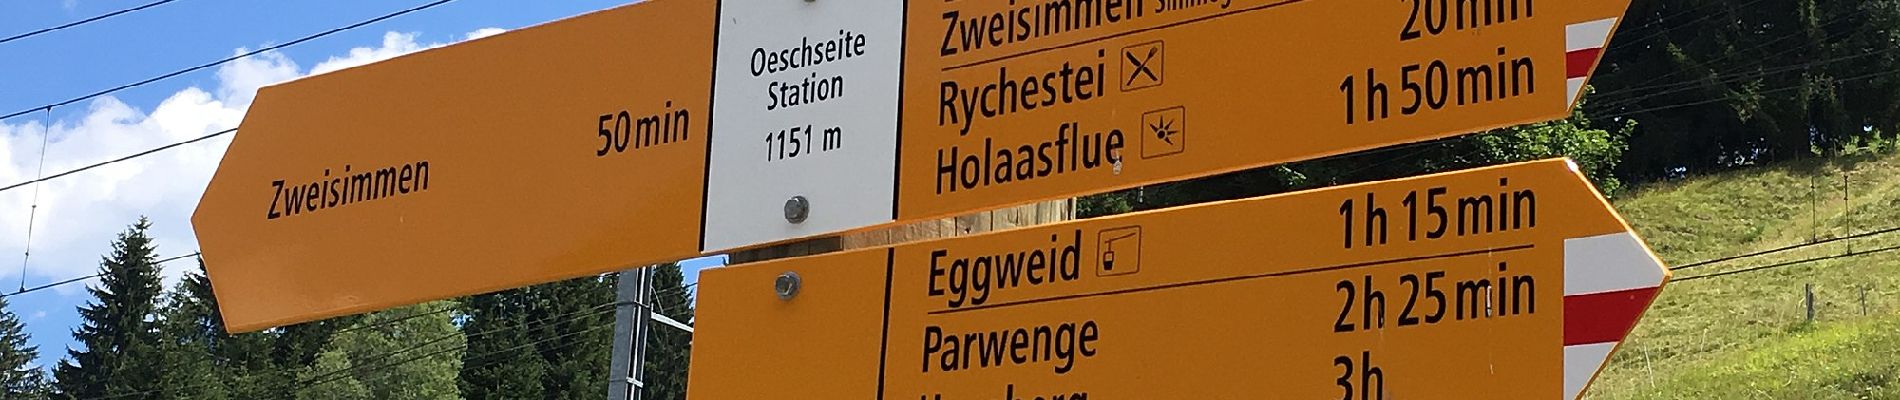 Percorso A piedi Zweisimmen - Eggweid Mittelstation - Oeschseite - Photo